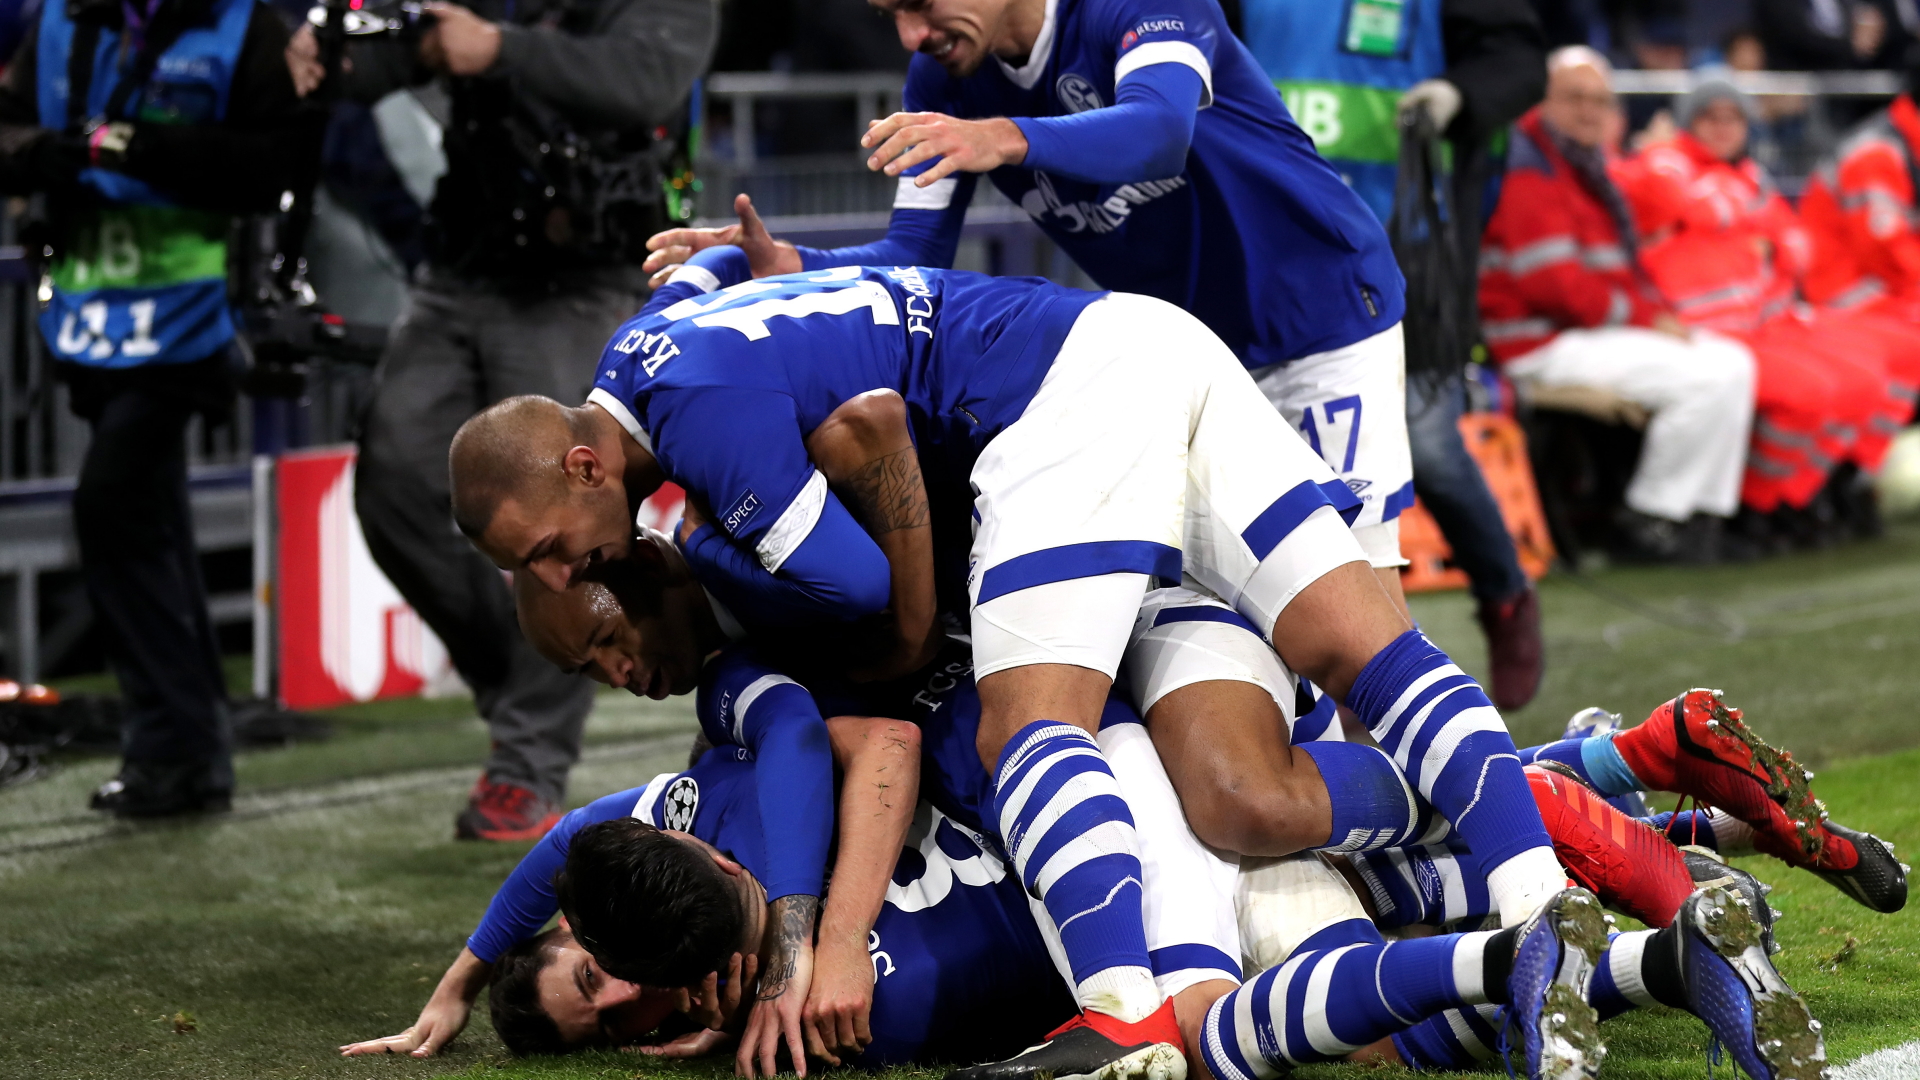 Schalkes Alessandro Schöpf feiert den Siegtreffer. | Bildquelle: FRIEDEMANN VOGEL/EPA-EFE/REX